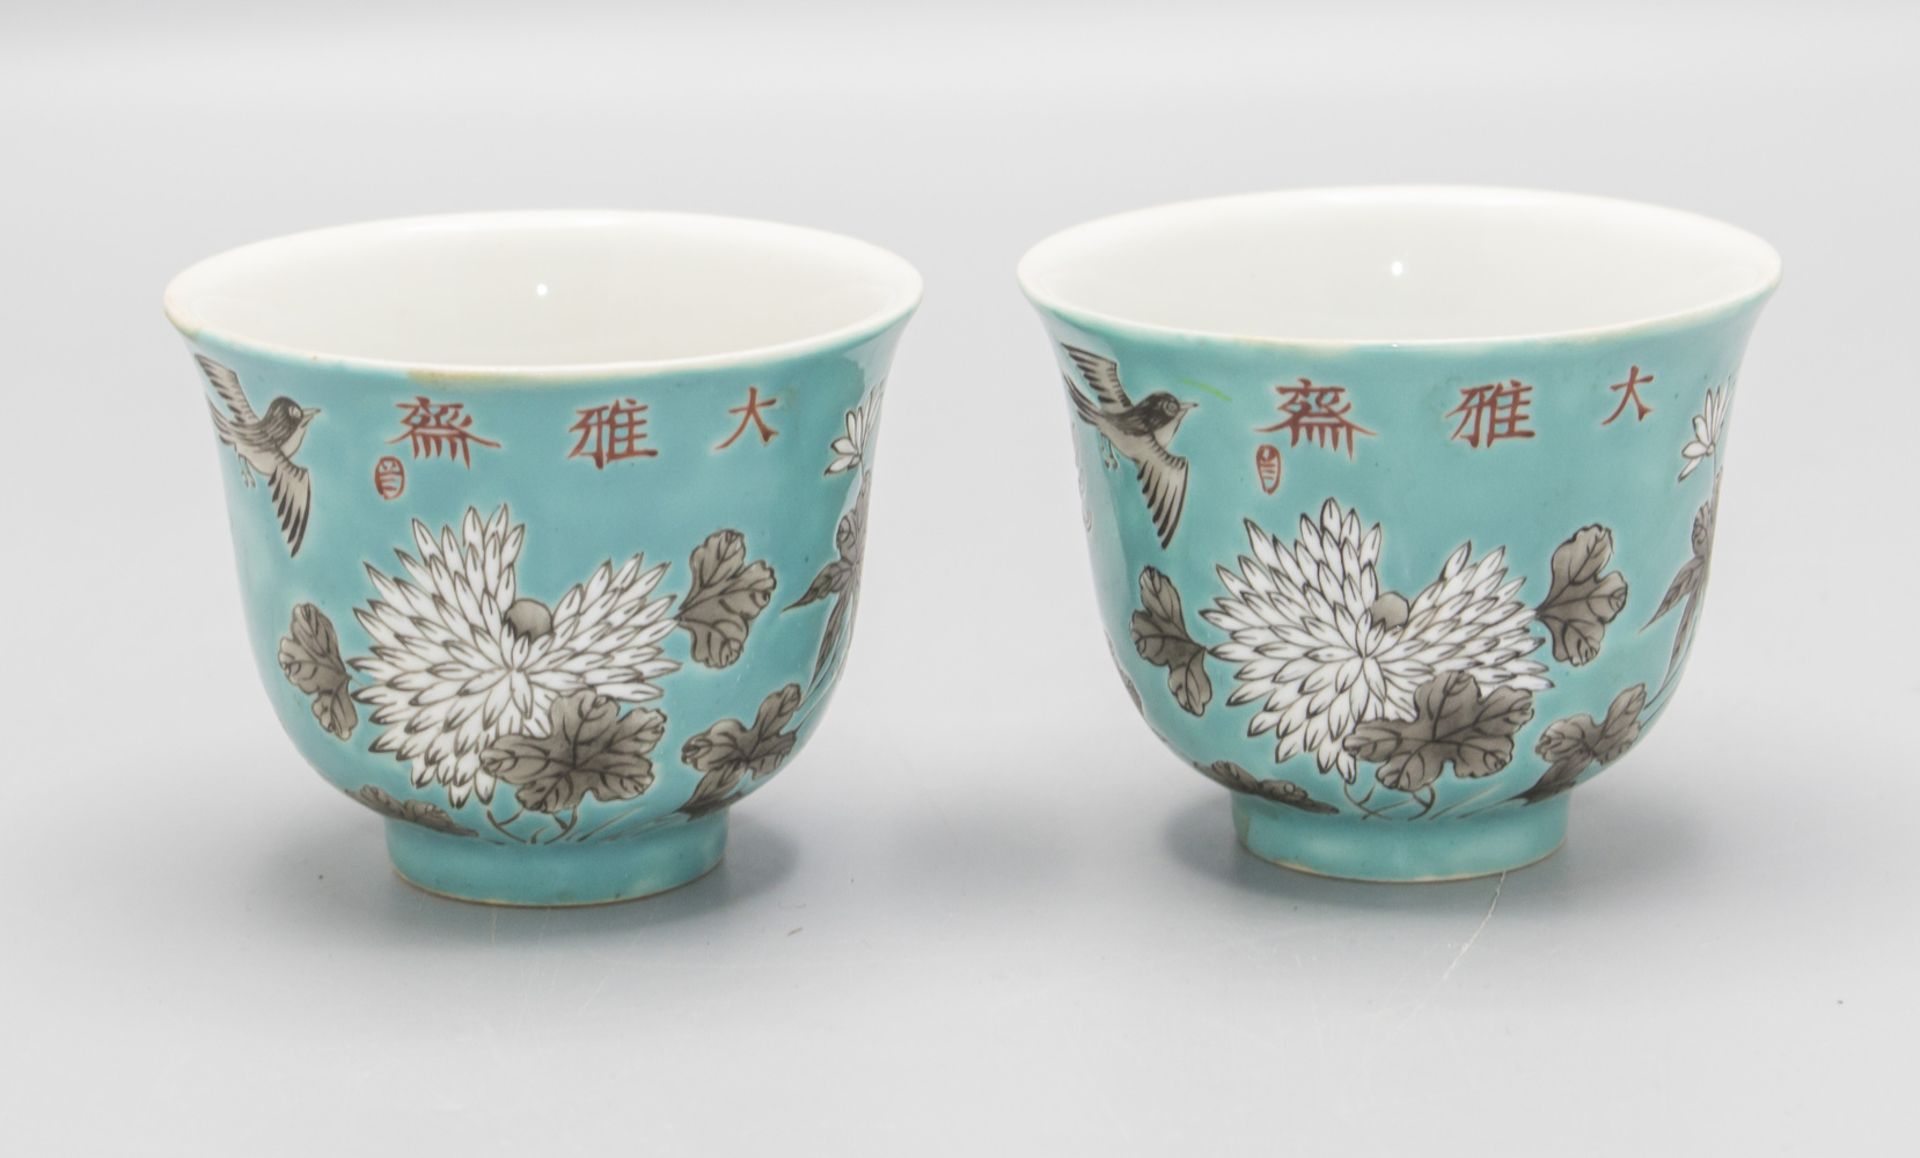 2 Teetassen / 2 tea cups, Dayazhai Yongqing Changchun, China